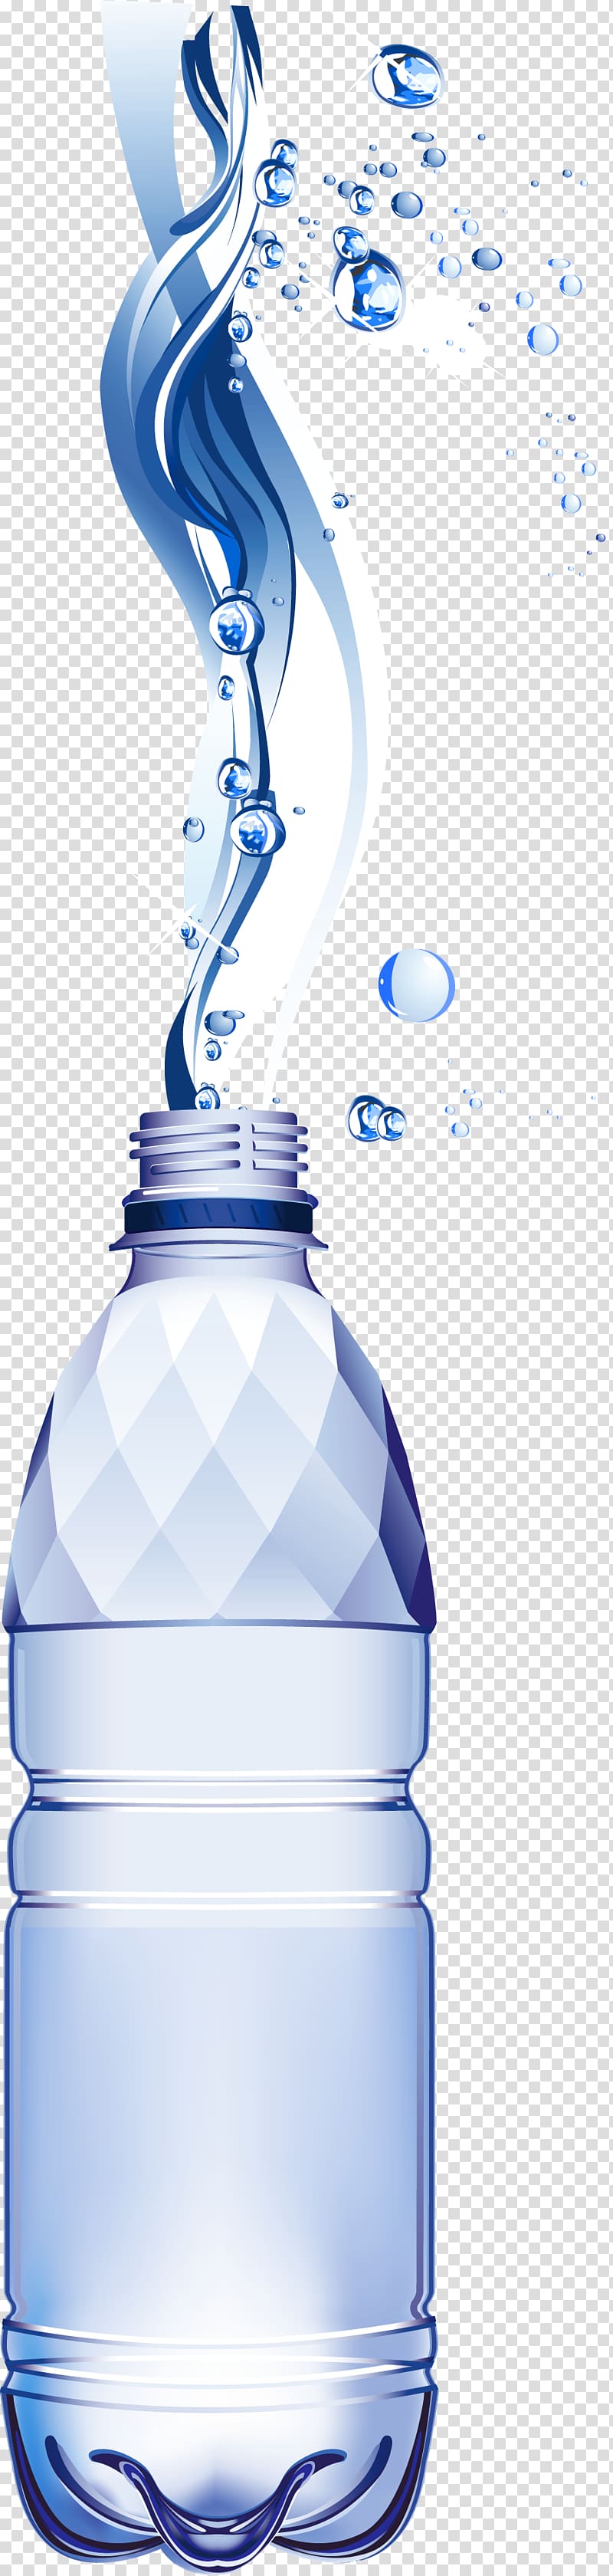 Bottled water Water Bottles, bottel transparent background PNG clipart